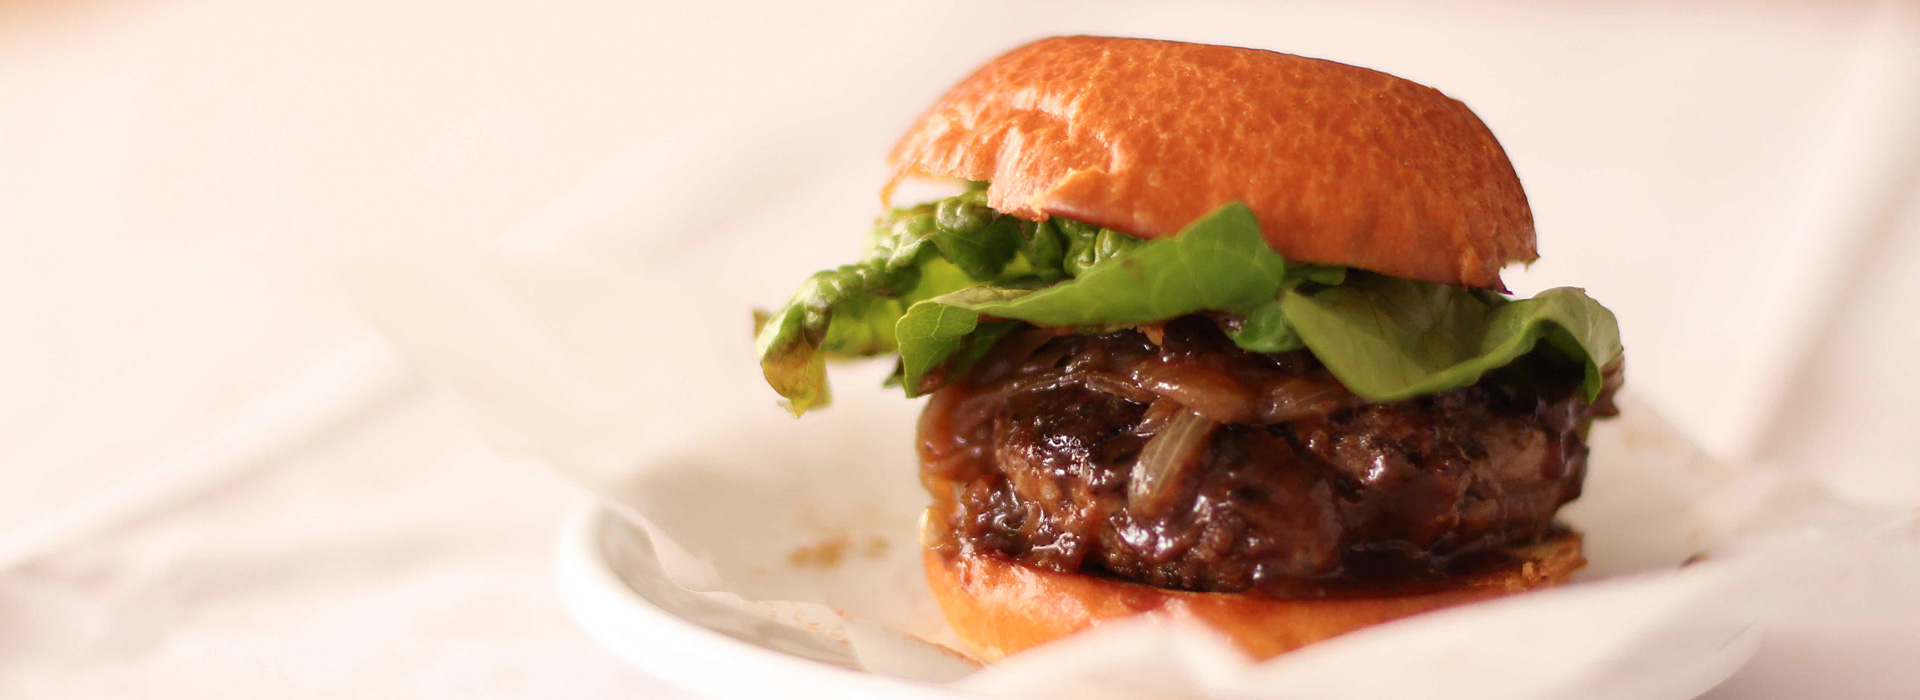 <p>ラムのひき肉にプルーンピューレを加えると、スパイスの香りが増し、調理後のハンバーガーのジューシーさが続きます。 […]</p>
